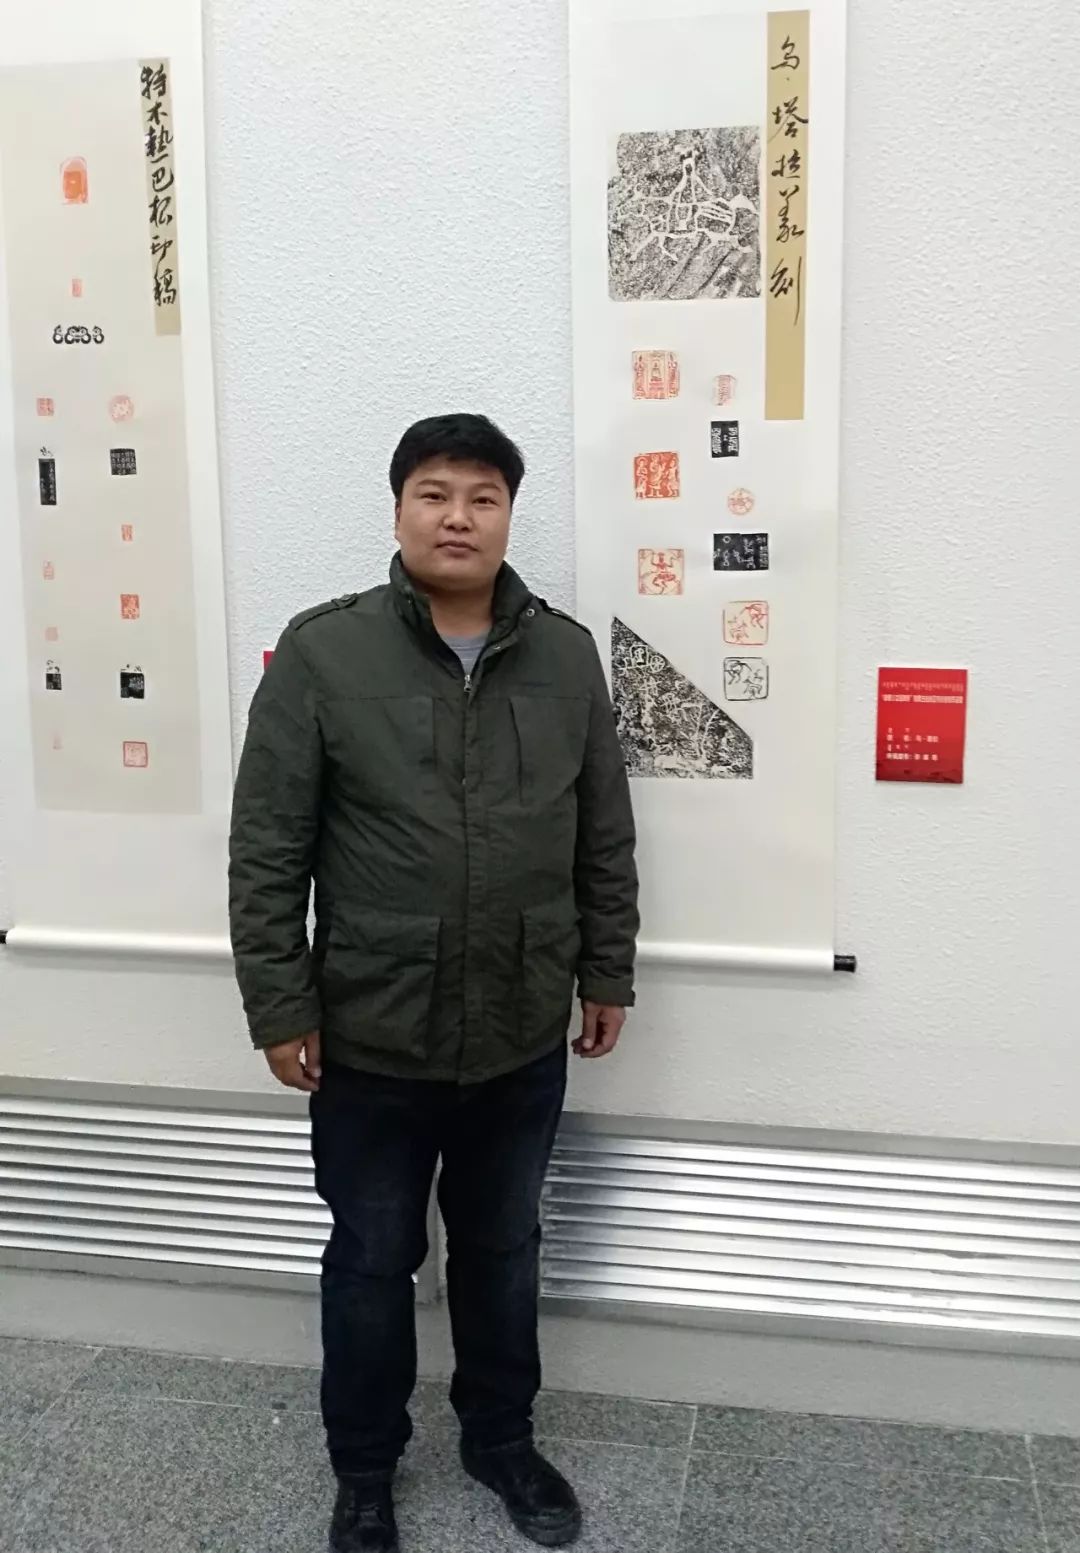 【人物】90后青年才俊乌塔拉：励志为蒙文书法篆刻艺术做贡献